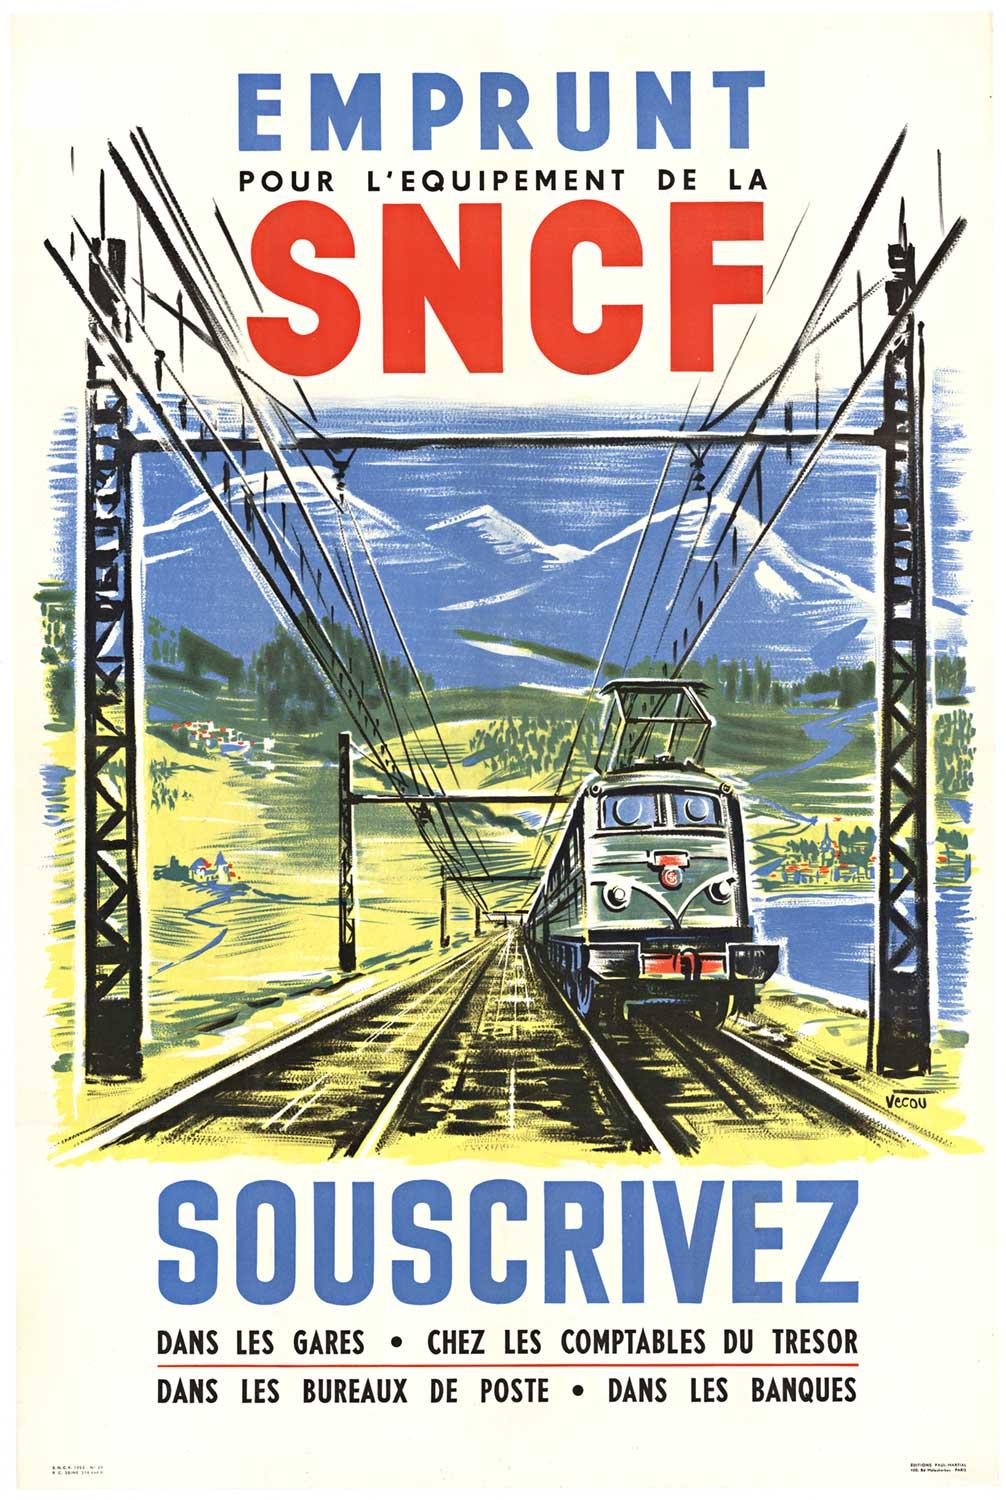 Vecoux Landscape Print - Original "Emprunt SNCF Souscrivez" 1953, vintage railroad poster